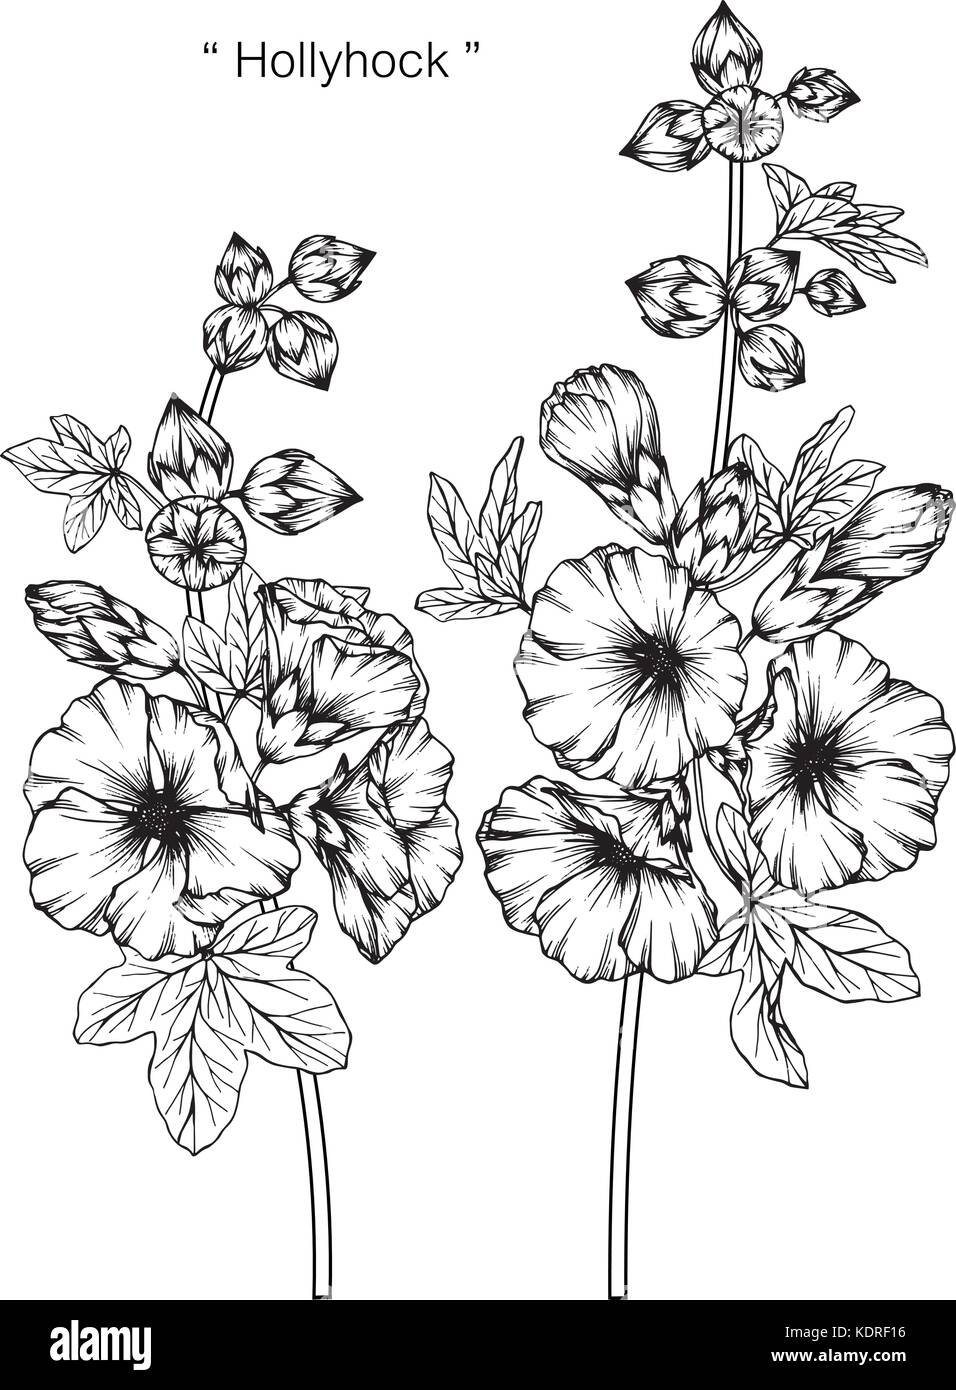 Fiore Hollyhock disegno illustrativo. In bianco e nero con la linea tecnica. Illustrazione Vettoriale